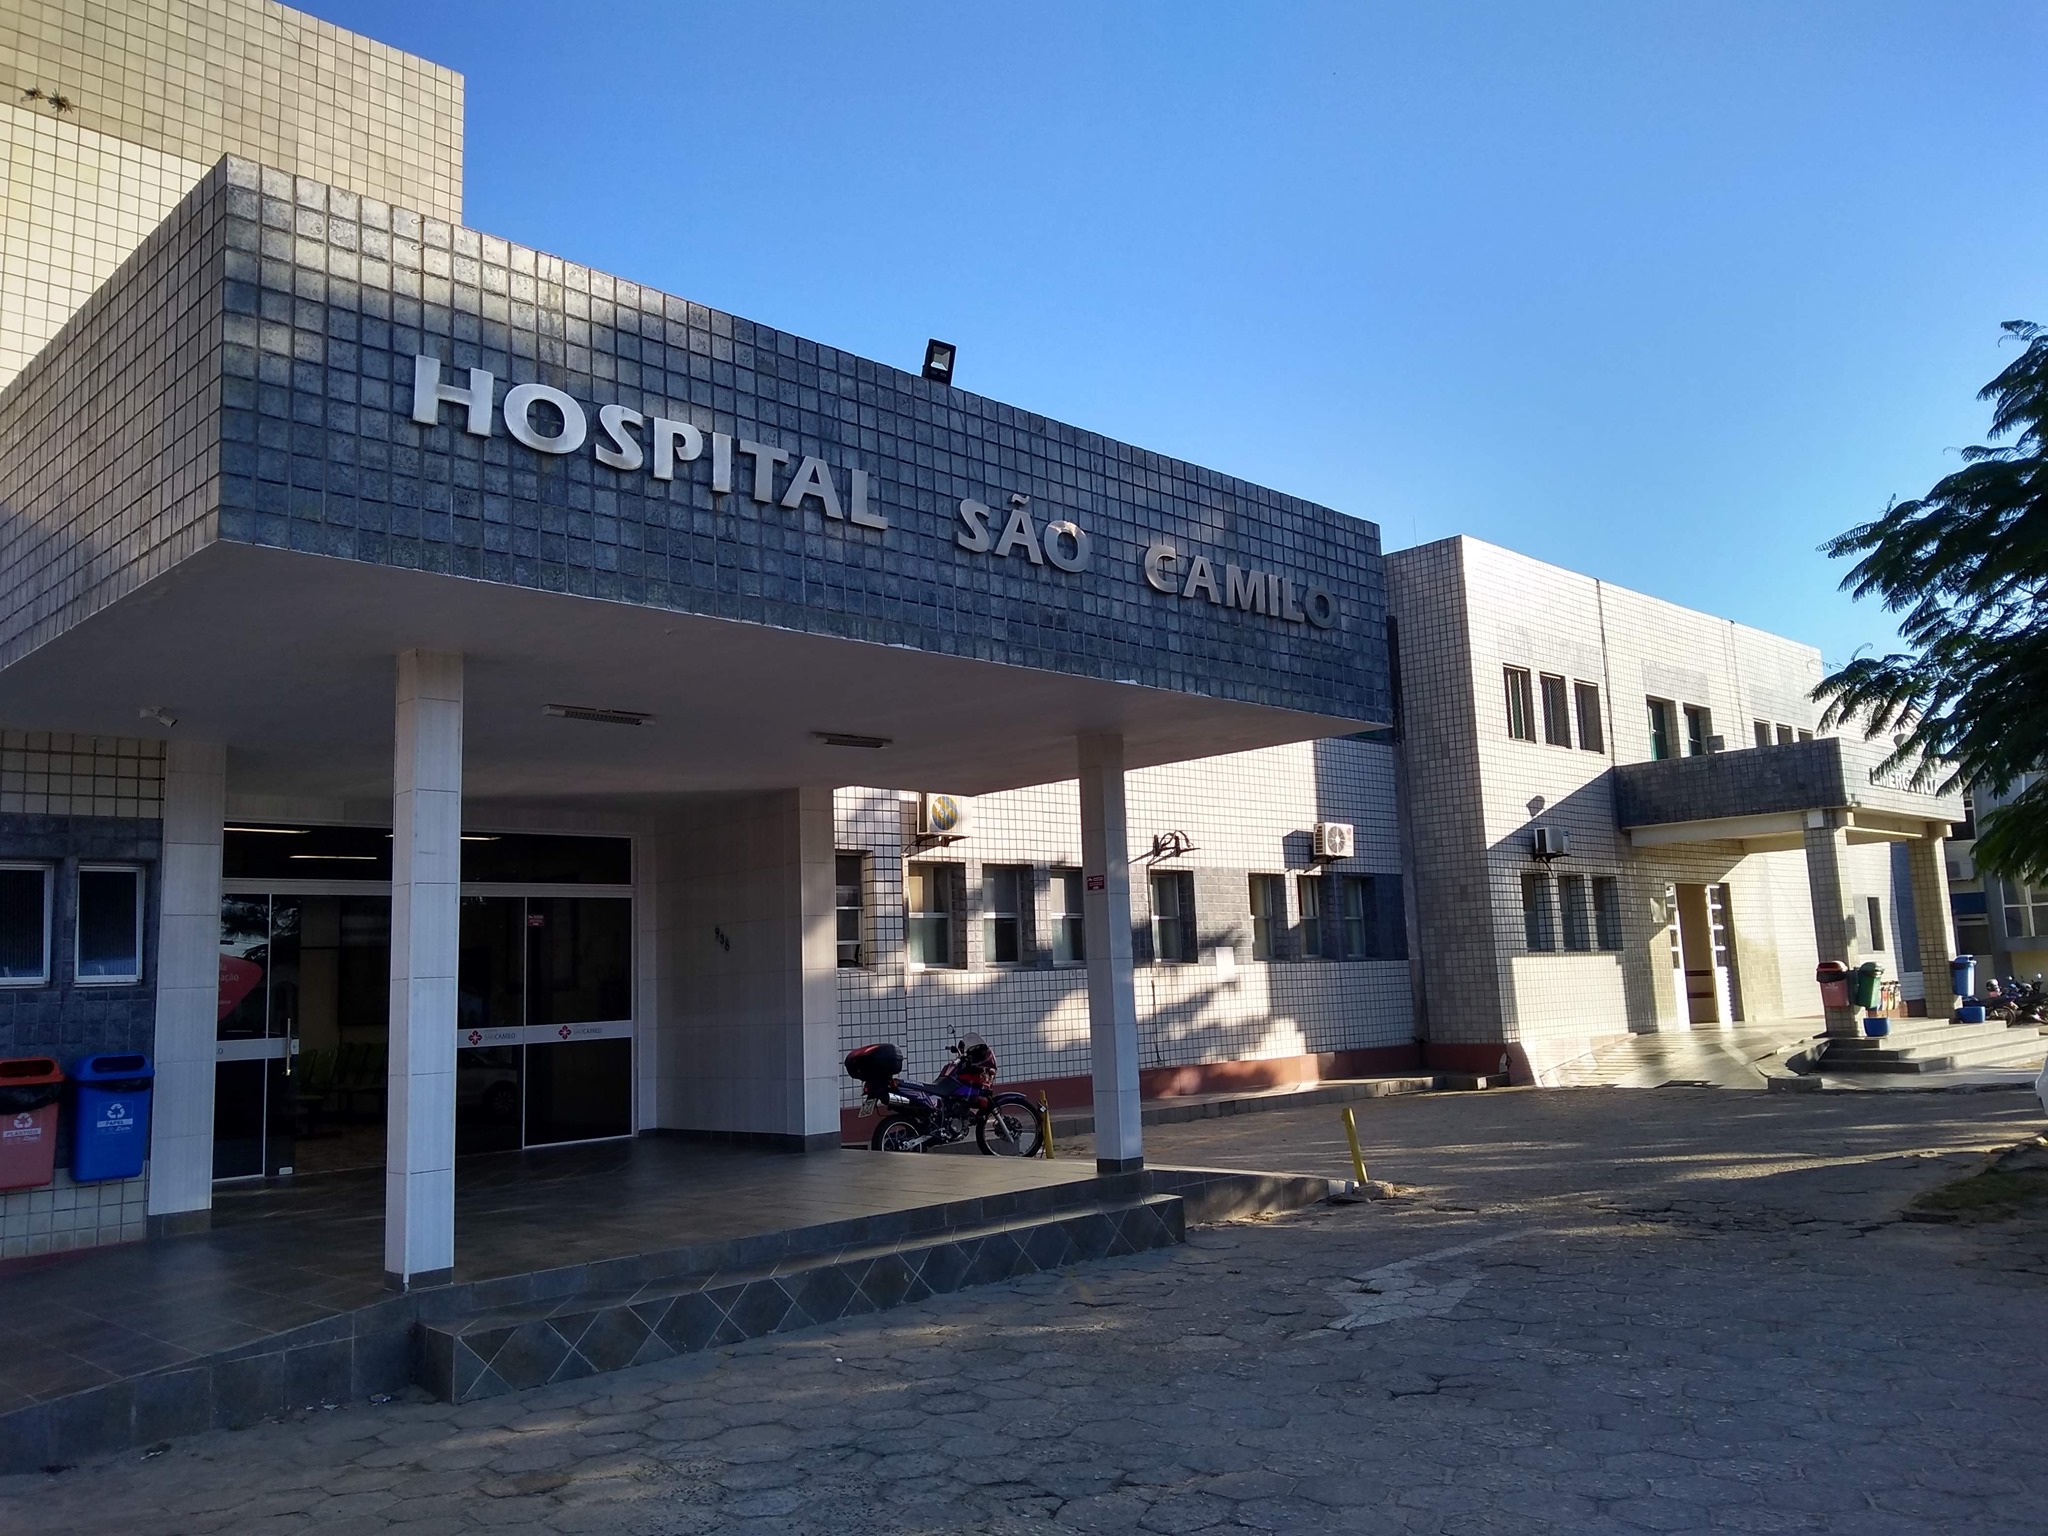 Município de Imbituba poderá ceder profissionais da saúde ao Hospital São Camilo que sofre com falta de leitos